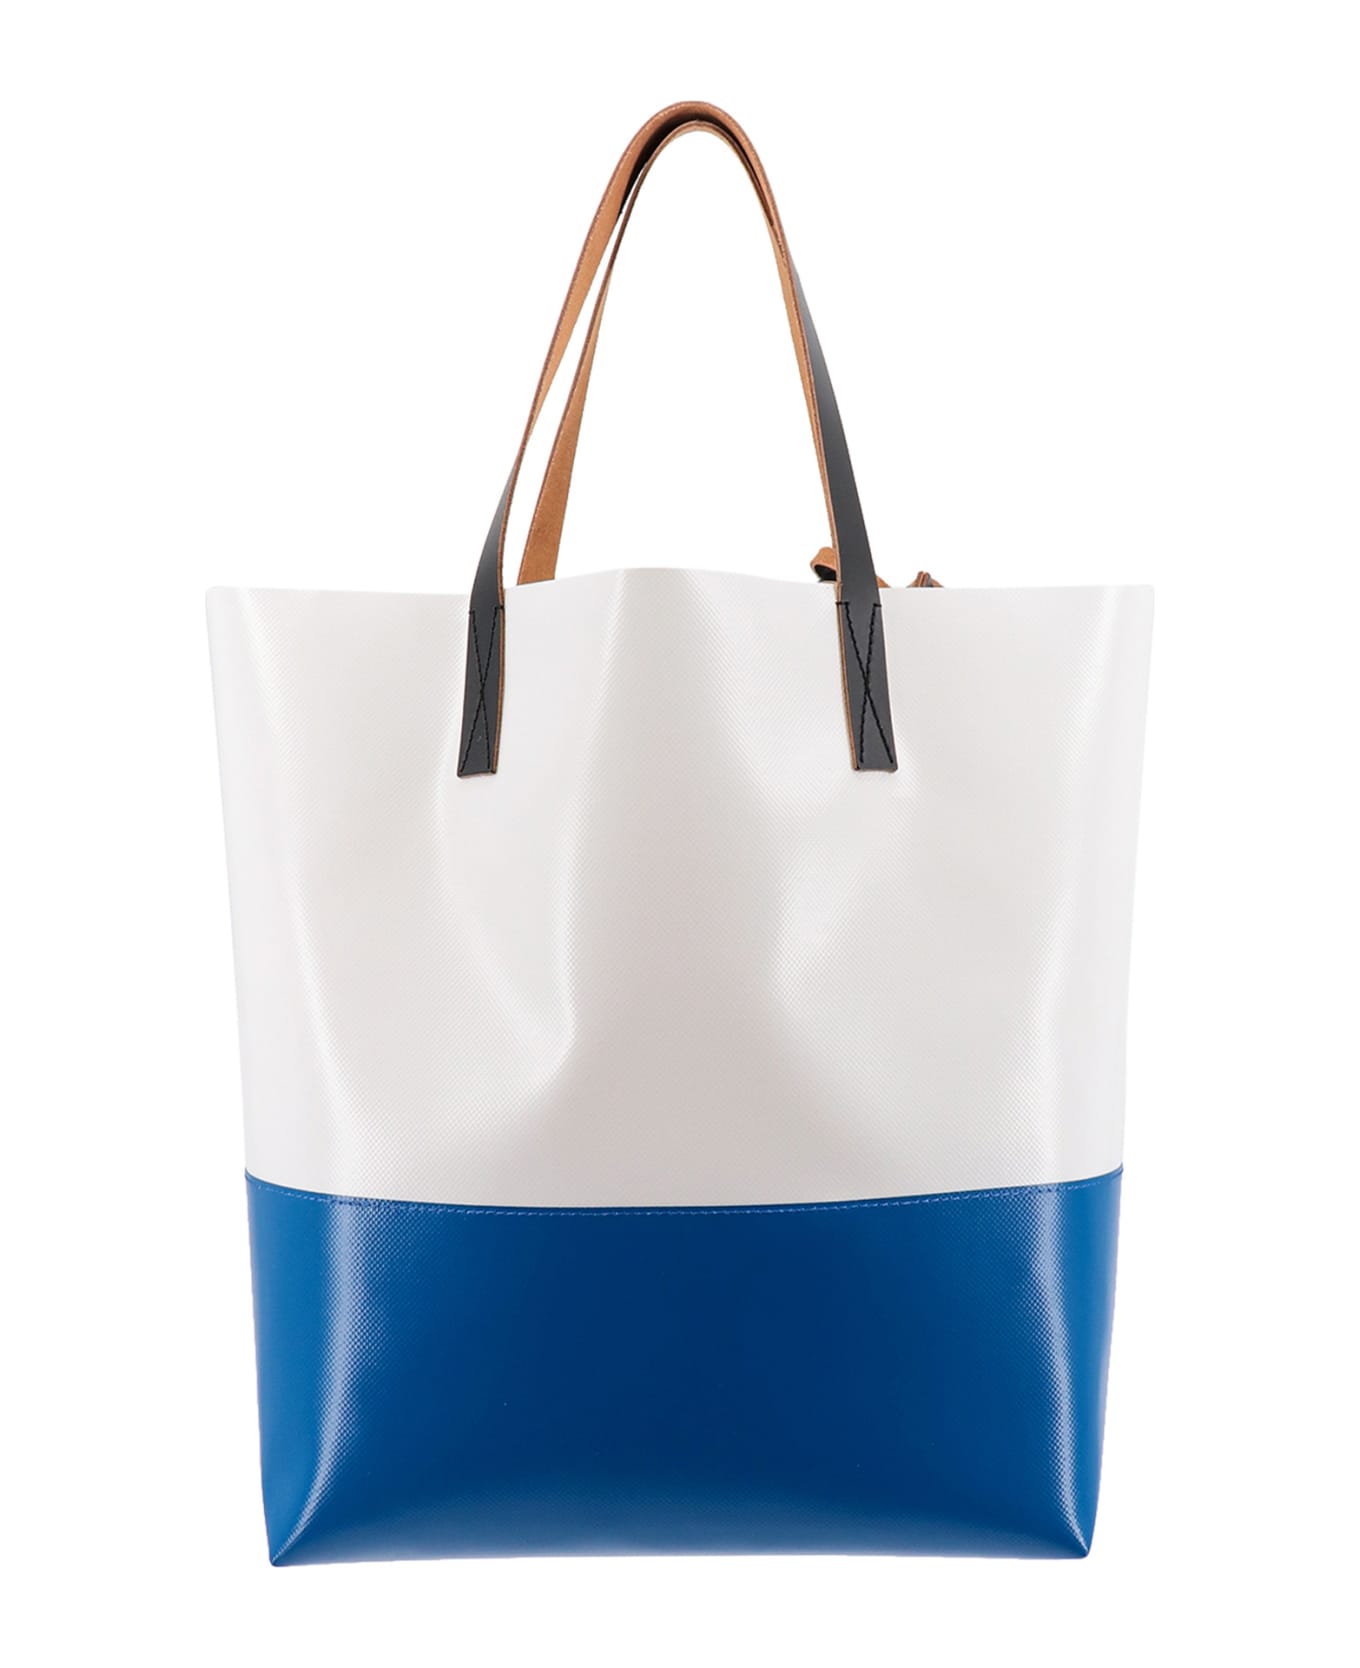 Marni Shoulder Bag - WHITE/BLUE